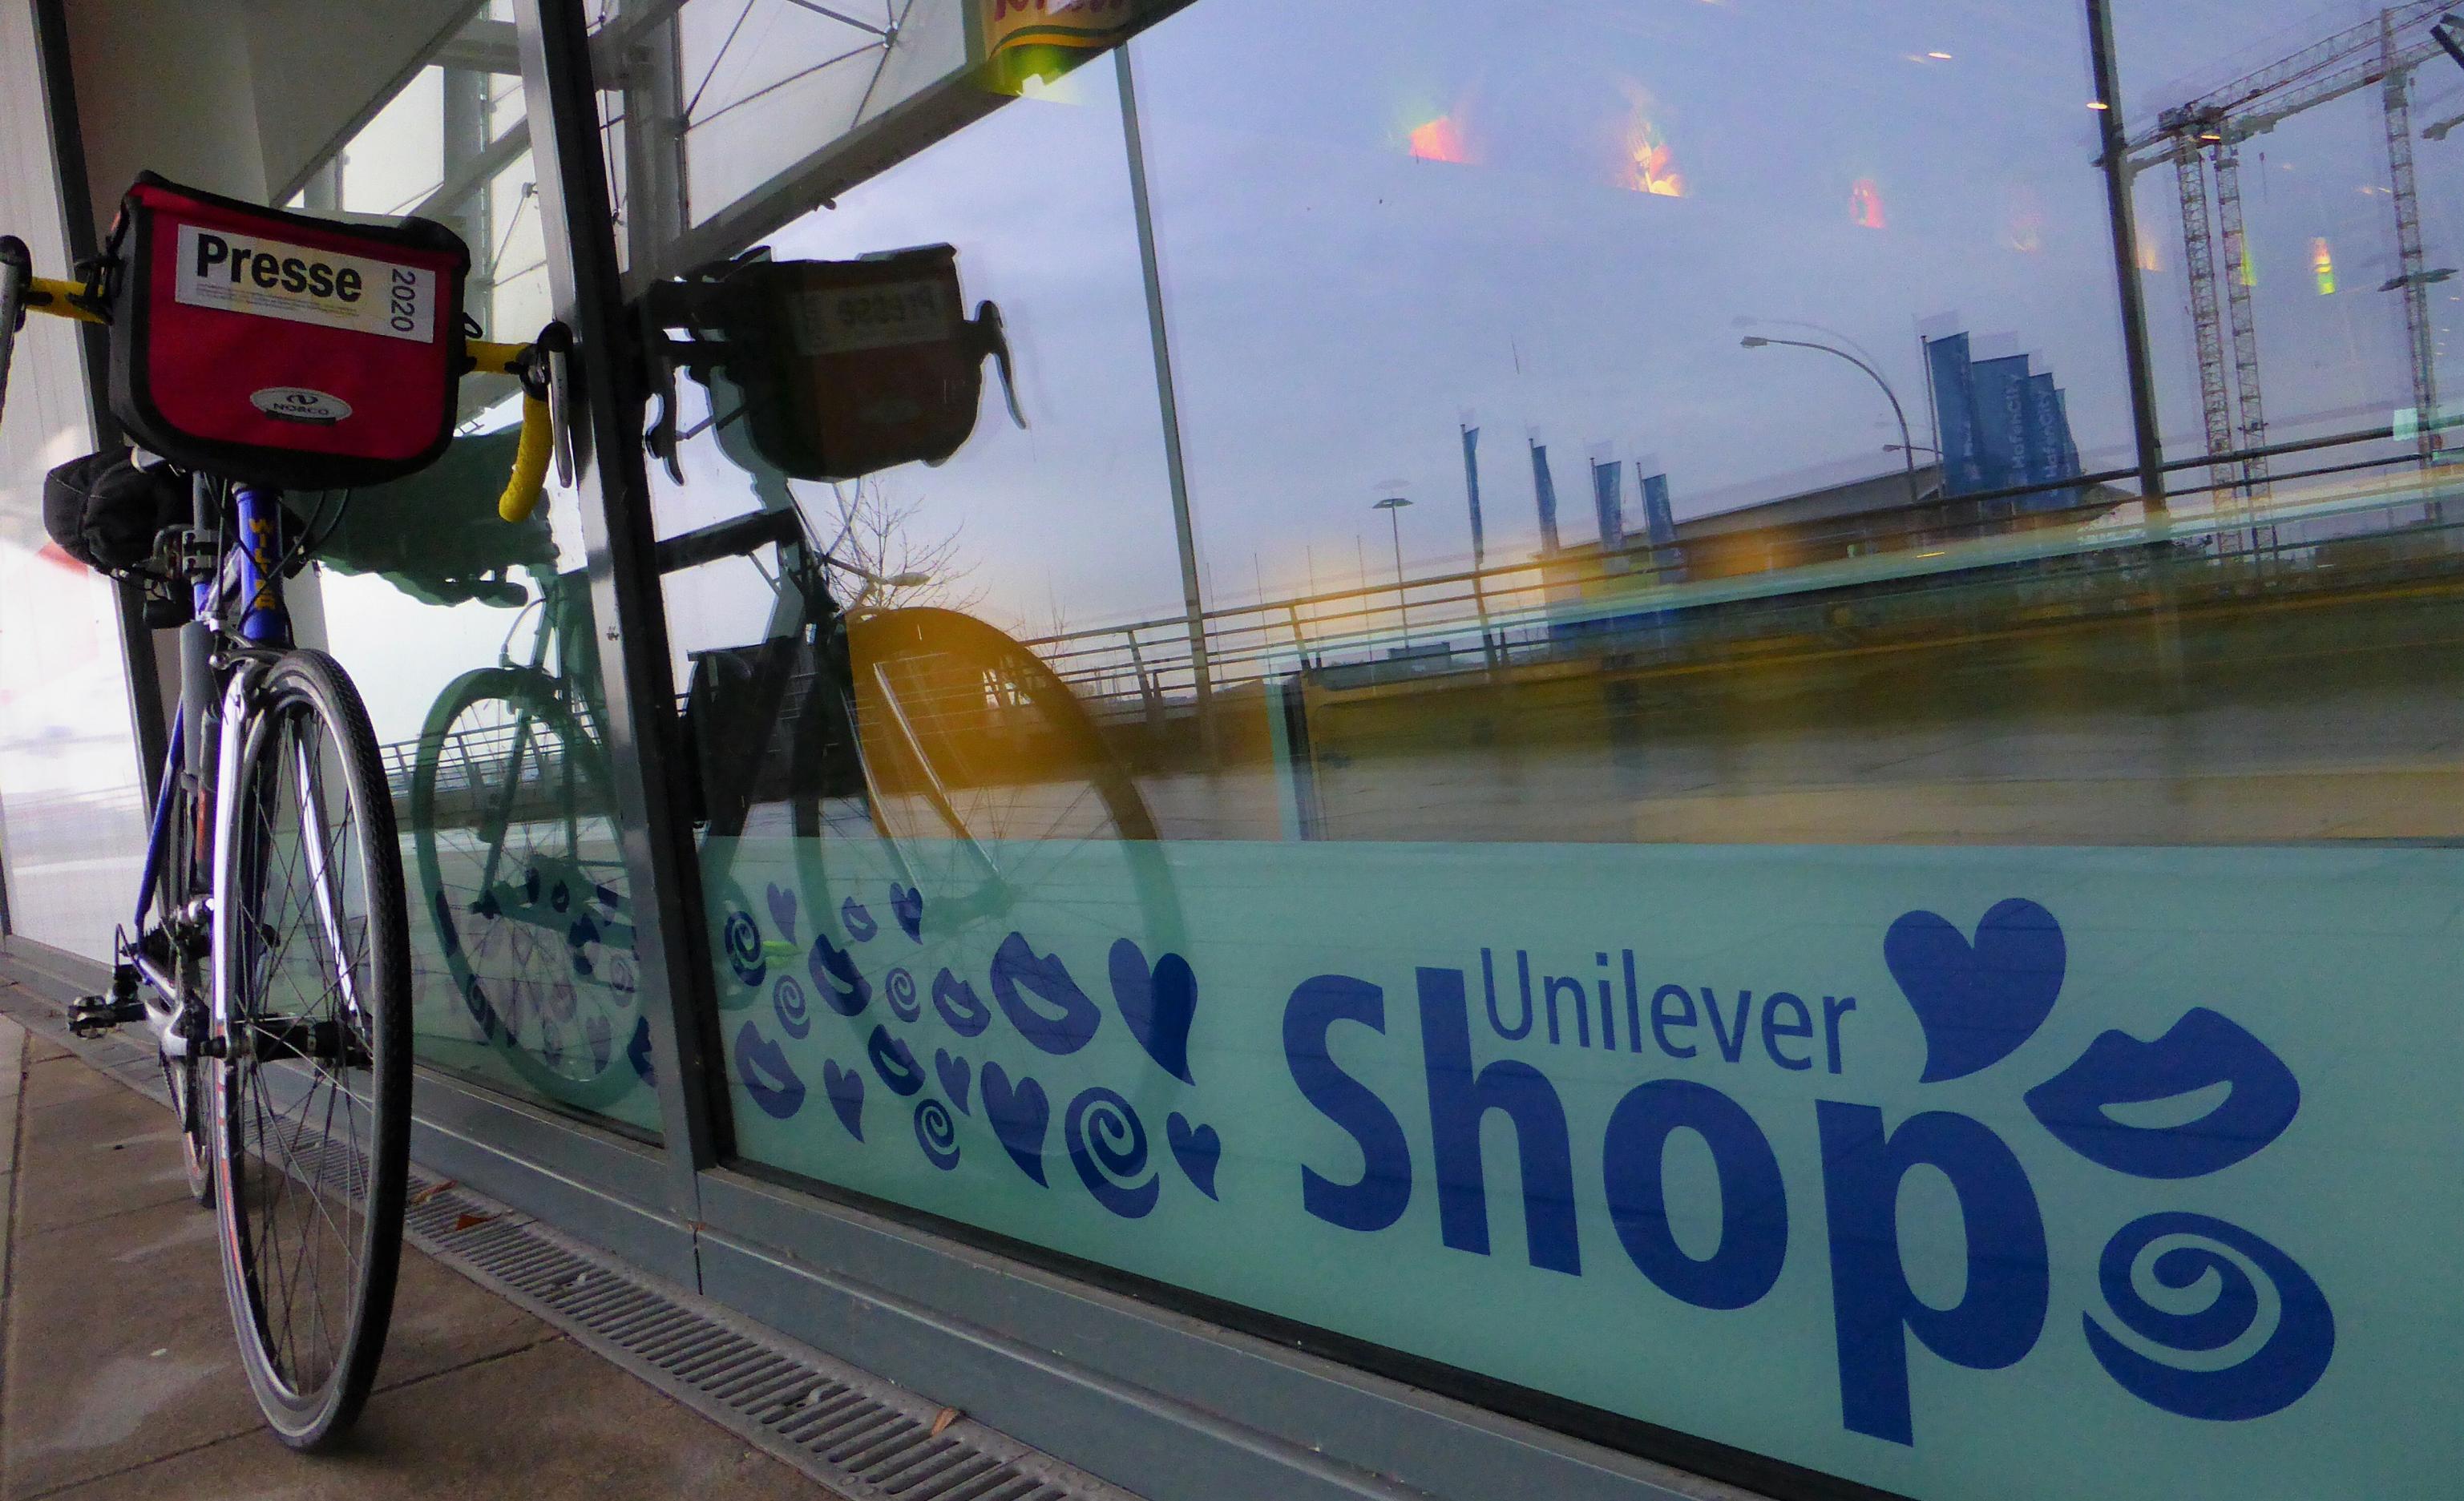 Unter einem Schaufensterglas, in dem sich an der Elbe befindliche Kraftwerkstürme und Baukräne spiegeln, wirbt eine mit Herzen und anderen Symbolen verzierte Werbeaufschrift für den sogenannten Unilever-Shop.